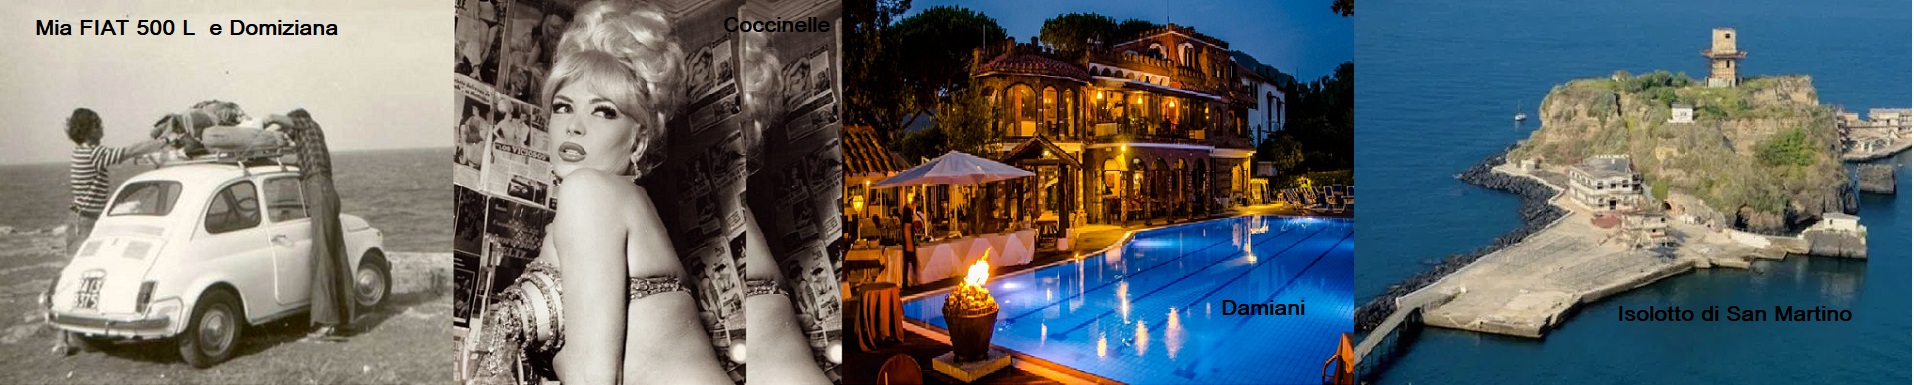 Napoli, Villa Comunale, Lungomare e Night Club: